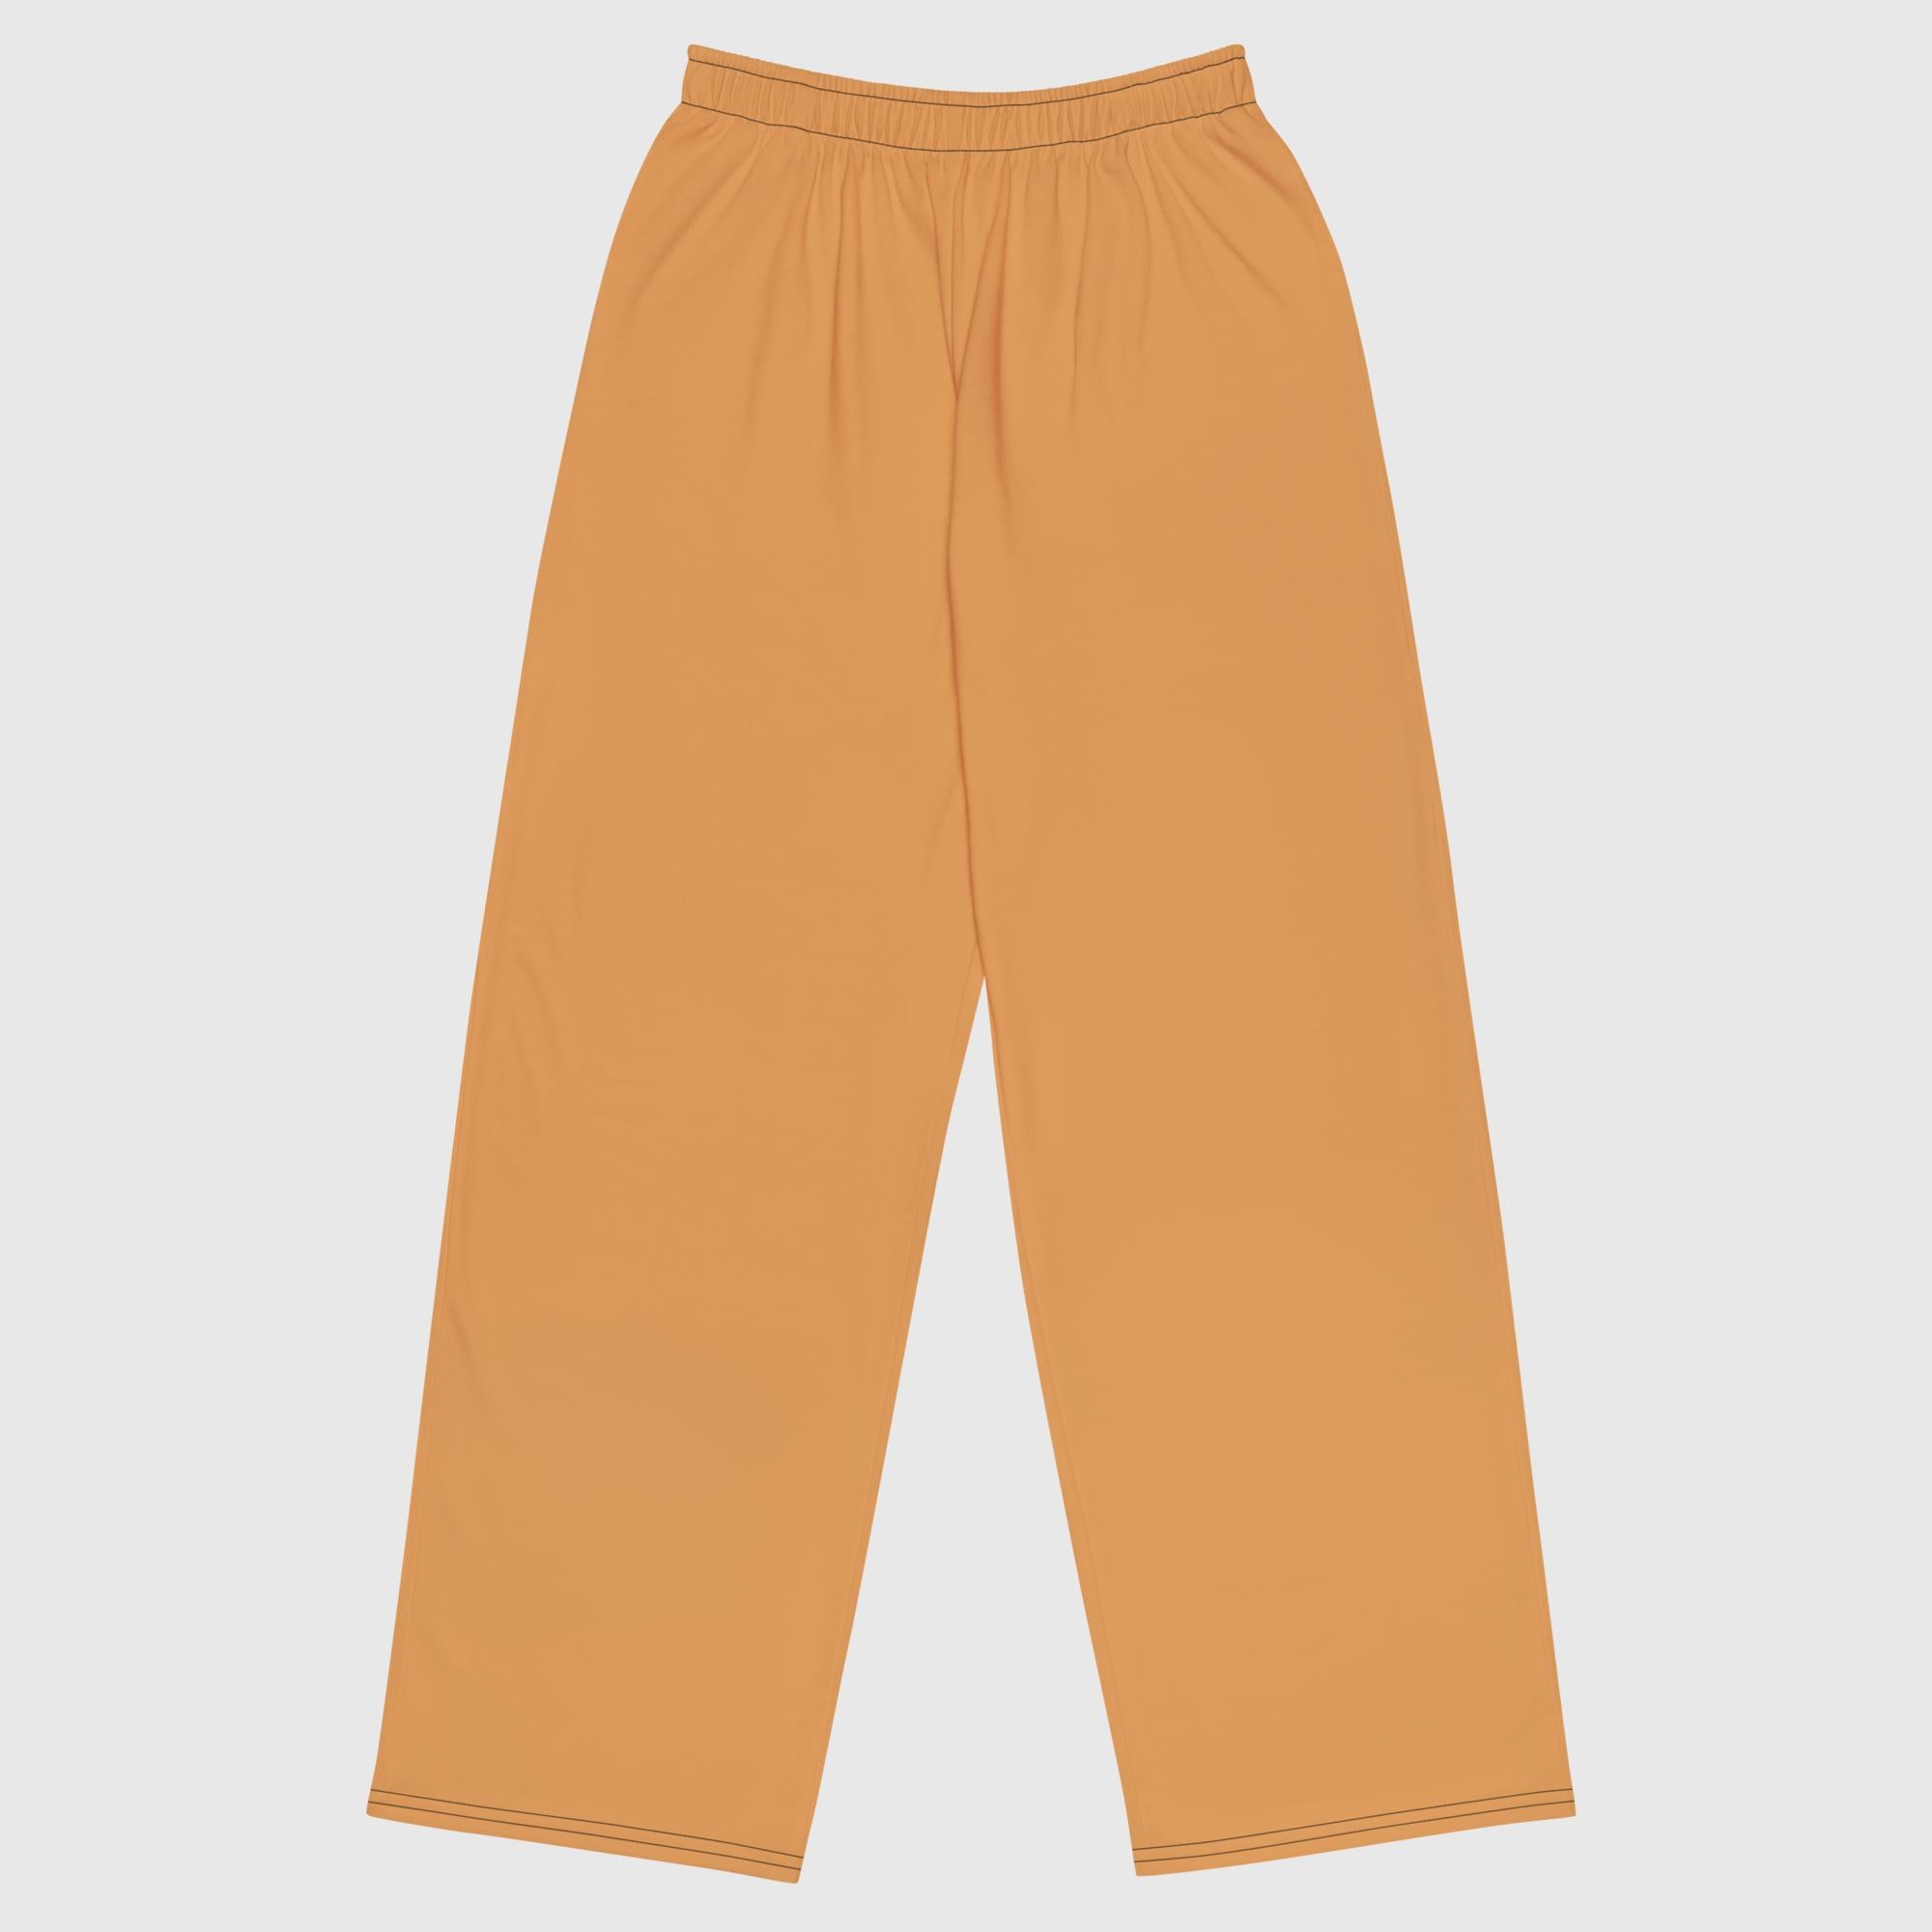 Pantalón ancho unisex - Naranja